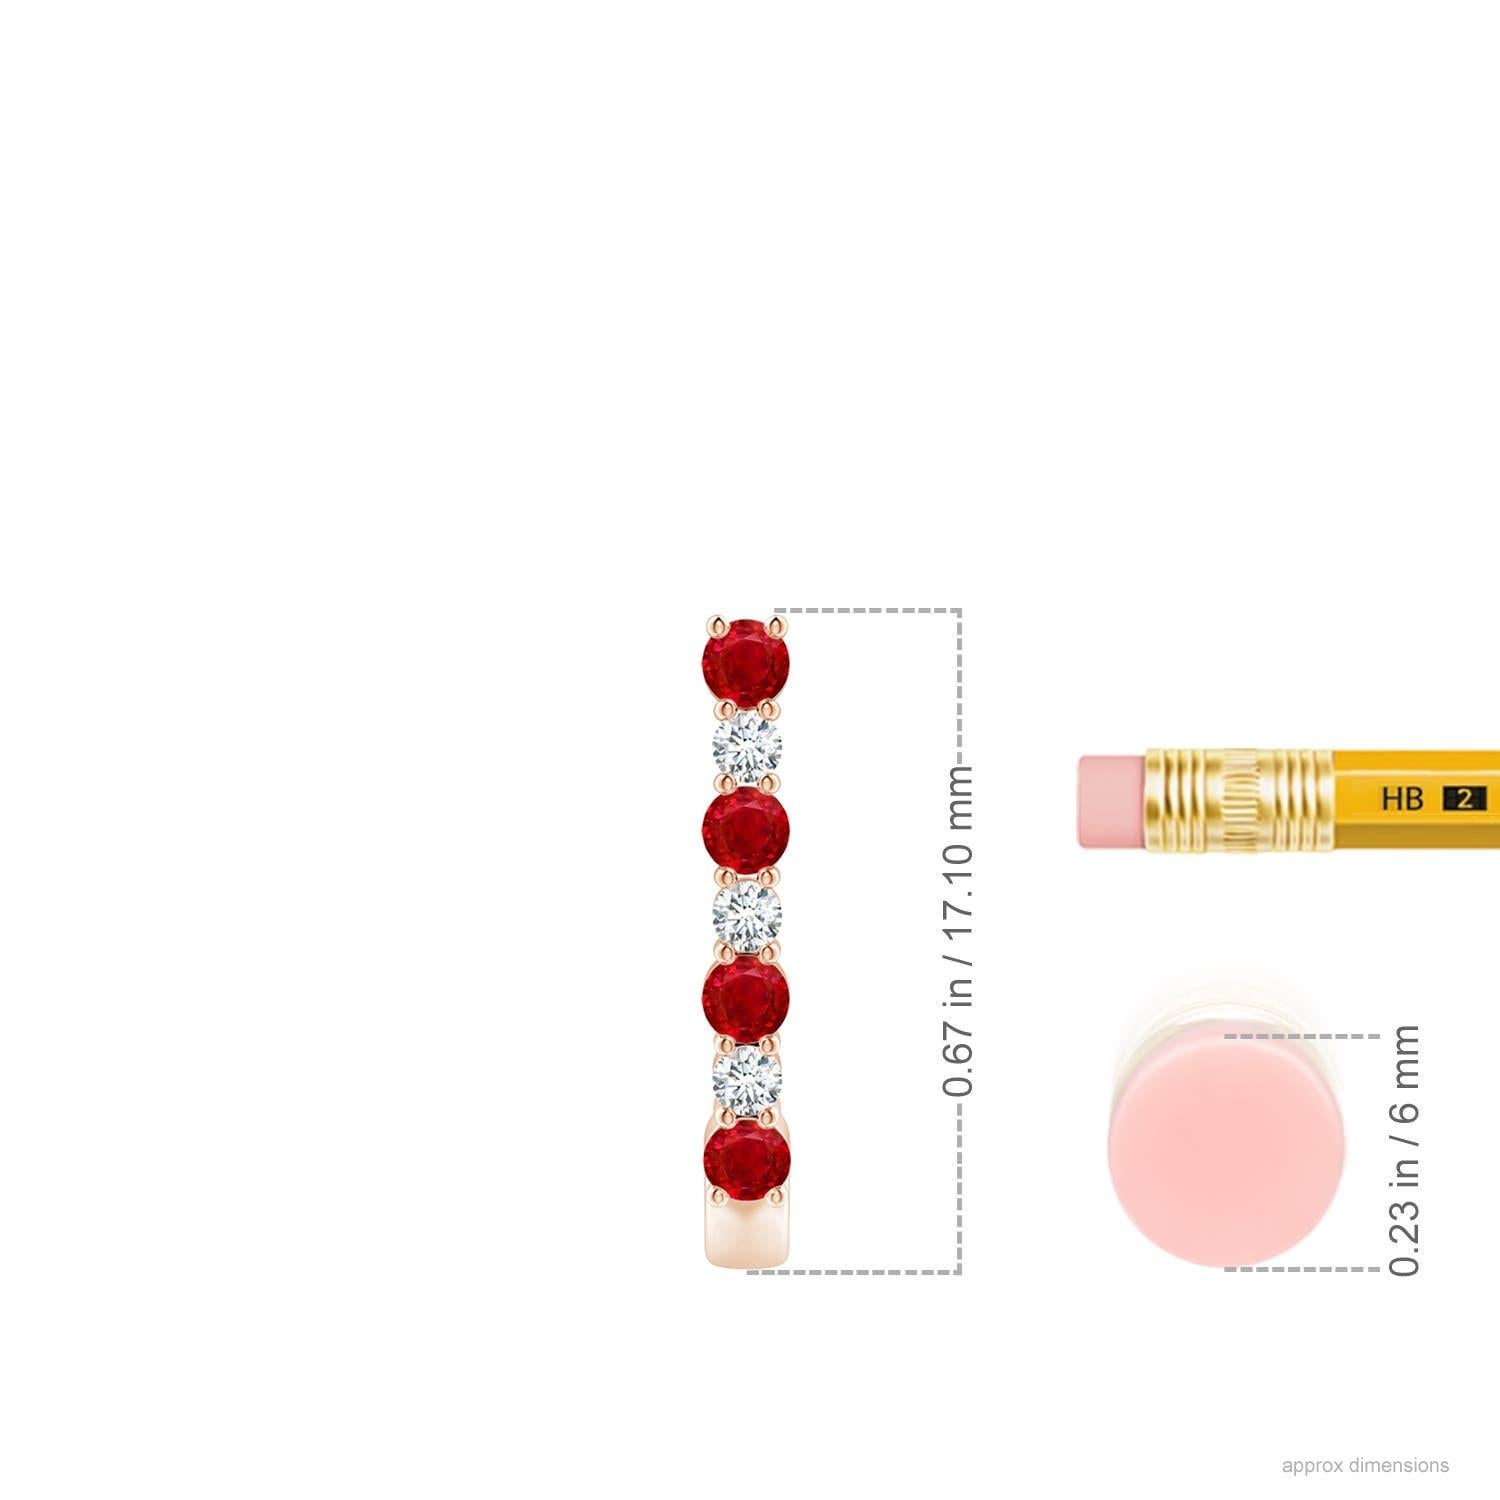 Diese atemberaubenden Rubin- und Diamant-Ohrringe sind aus 14-karätigem Roségold gefertigt. Die J-Ringe sind abwechselnd mit leuchtend roten Rubinen und funkelnden Diamanten besetzt, was einen fesselnden Effekt erzeugt.
Der Rubin ist der